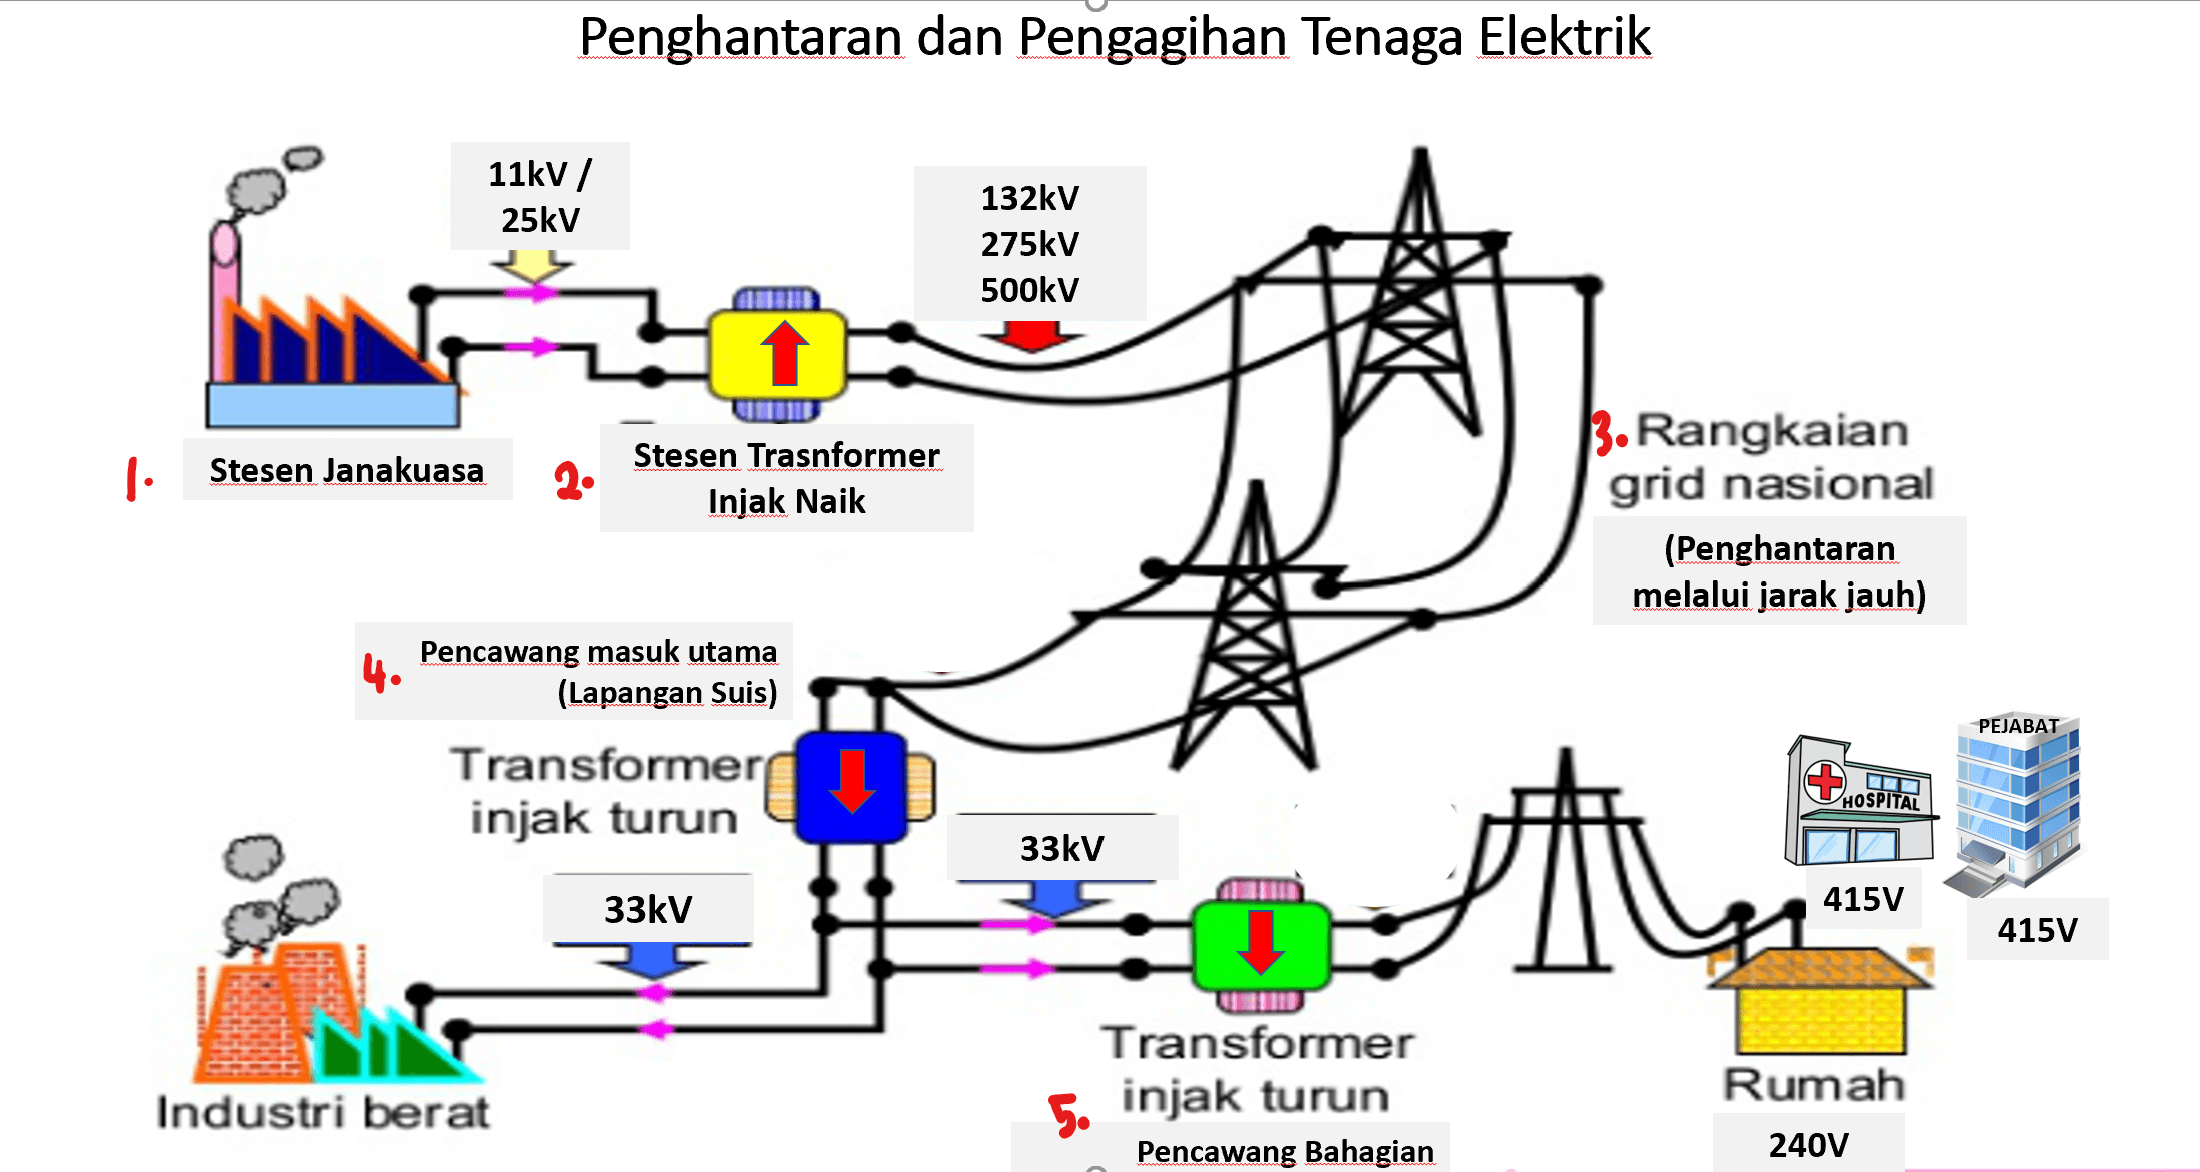 Dan elektrik penghantaran pengagihan tenaga SMK PULAU